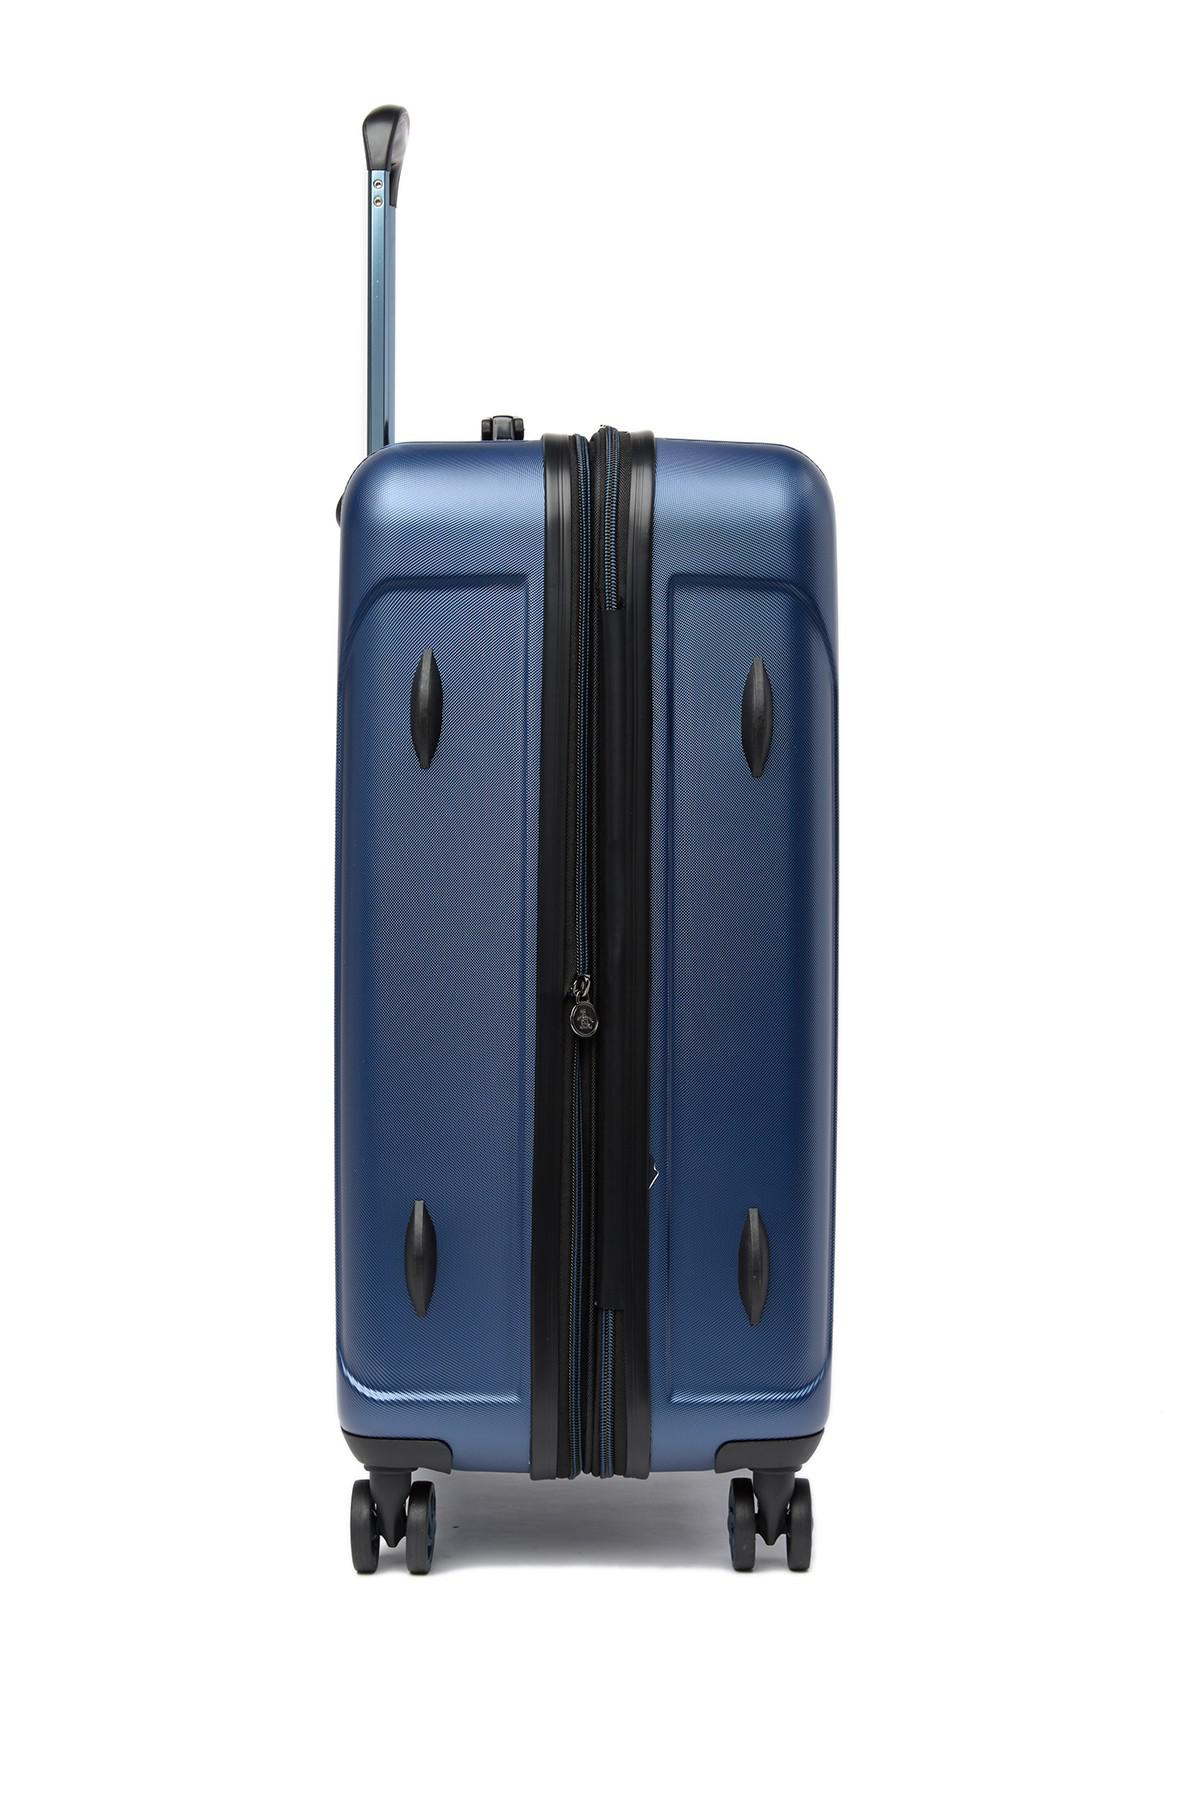 Original Penguin Wilson Collection Medium Suitcase in Metallic Blue (Blue)  for Men - Lyst